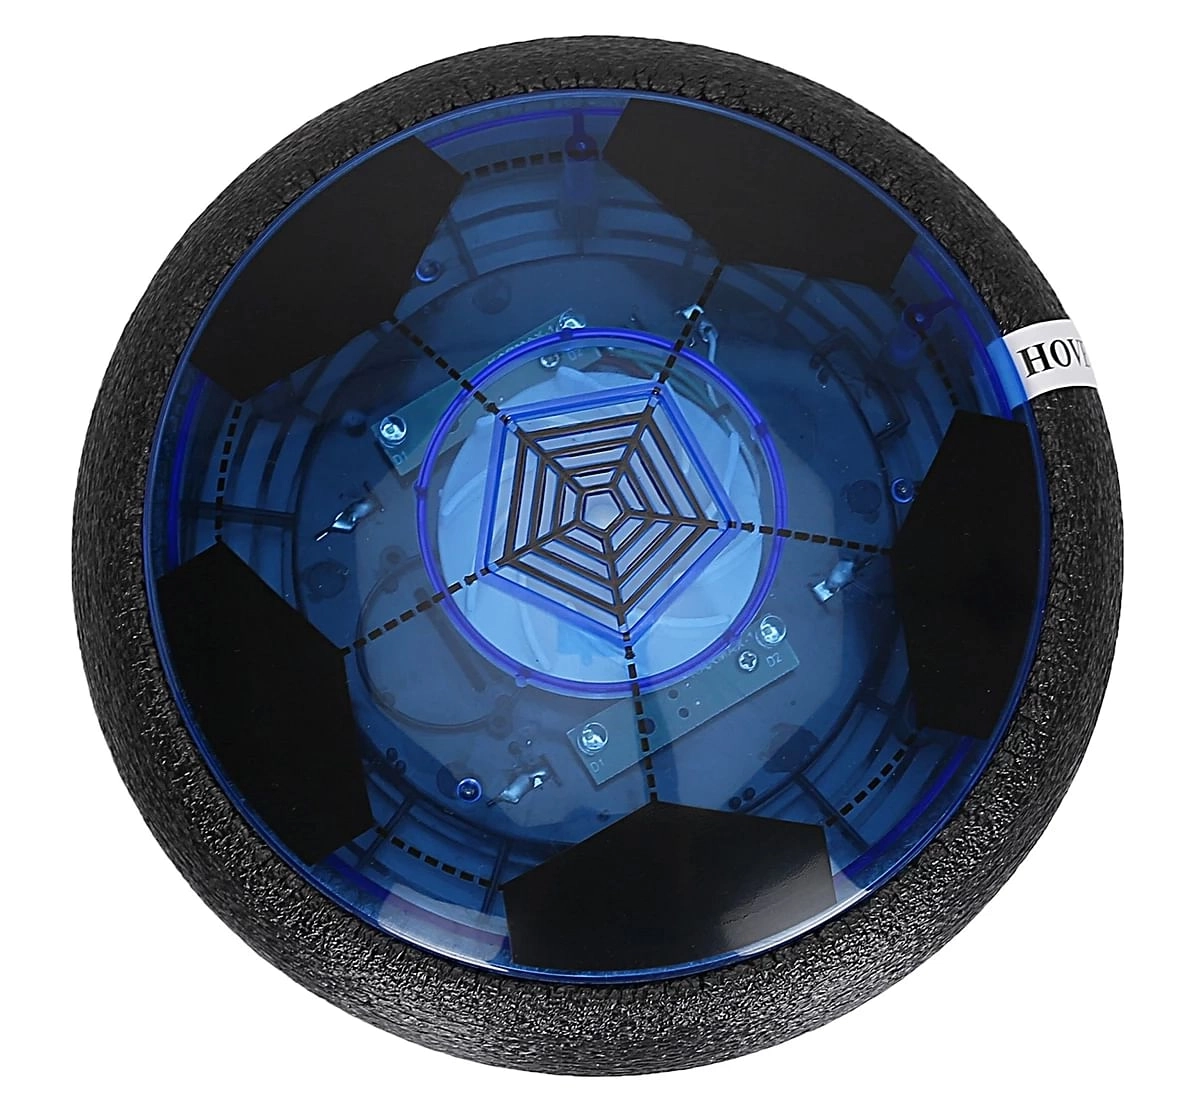 Hamleys Transparent Hover Ball for kids 3Y+, Blue & Black